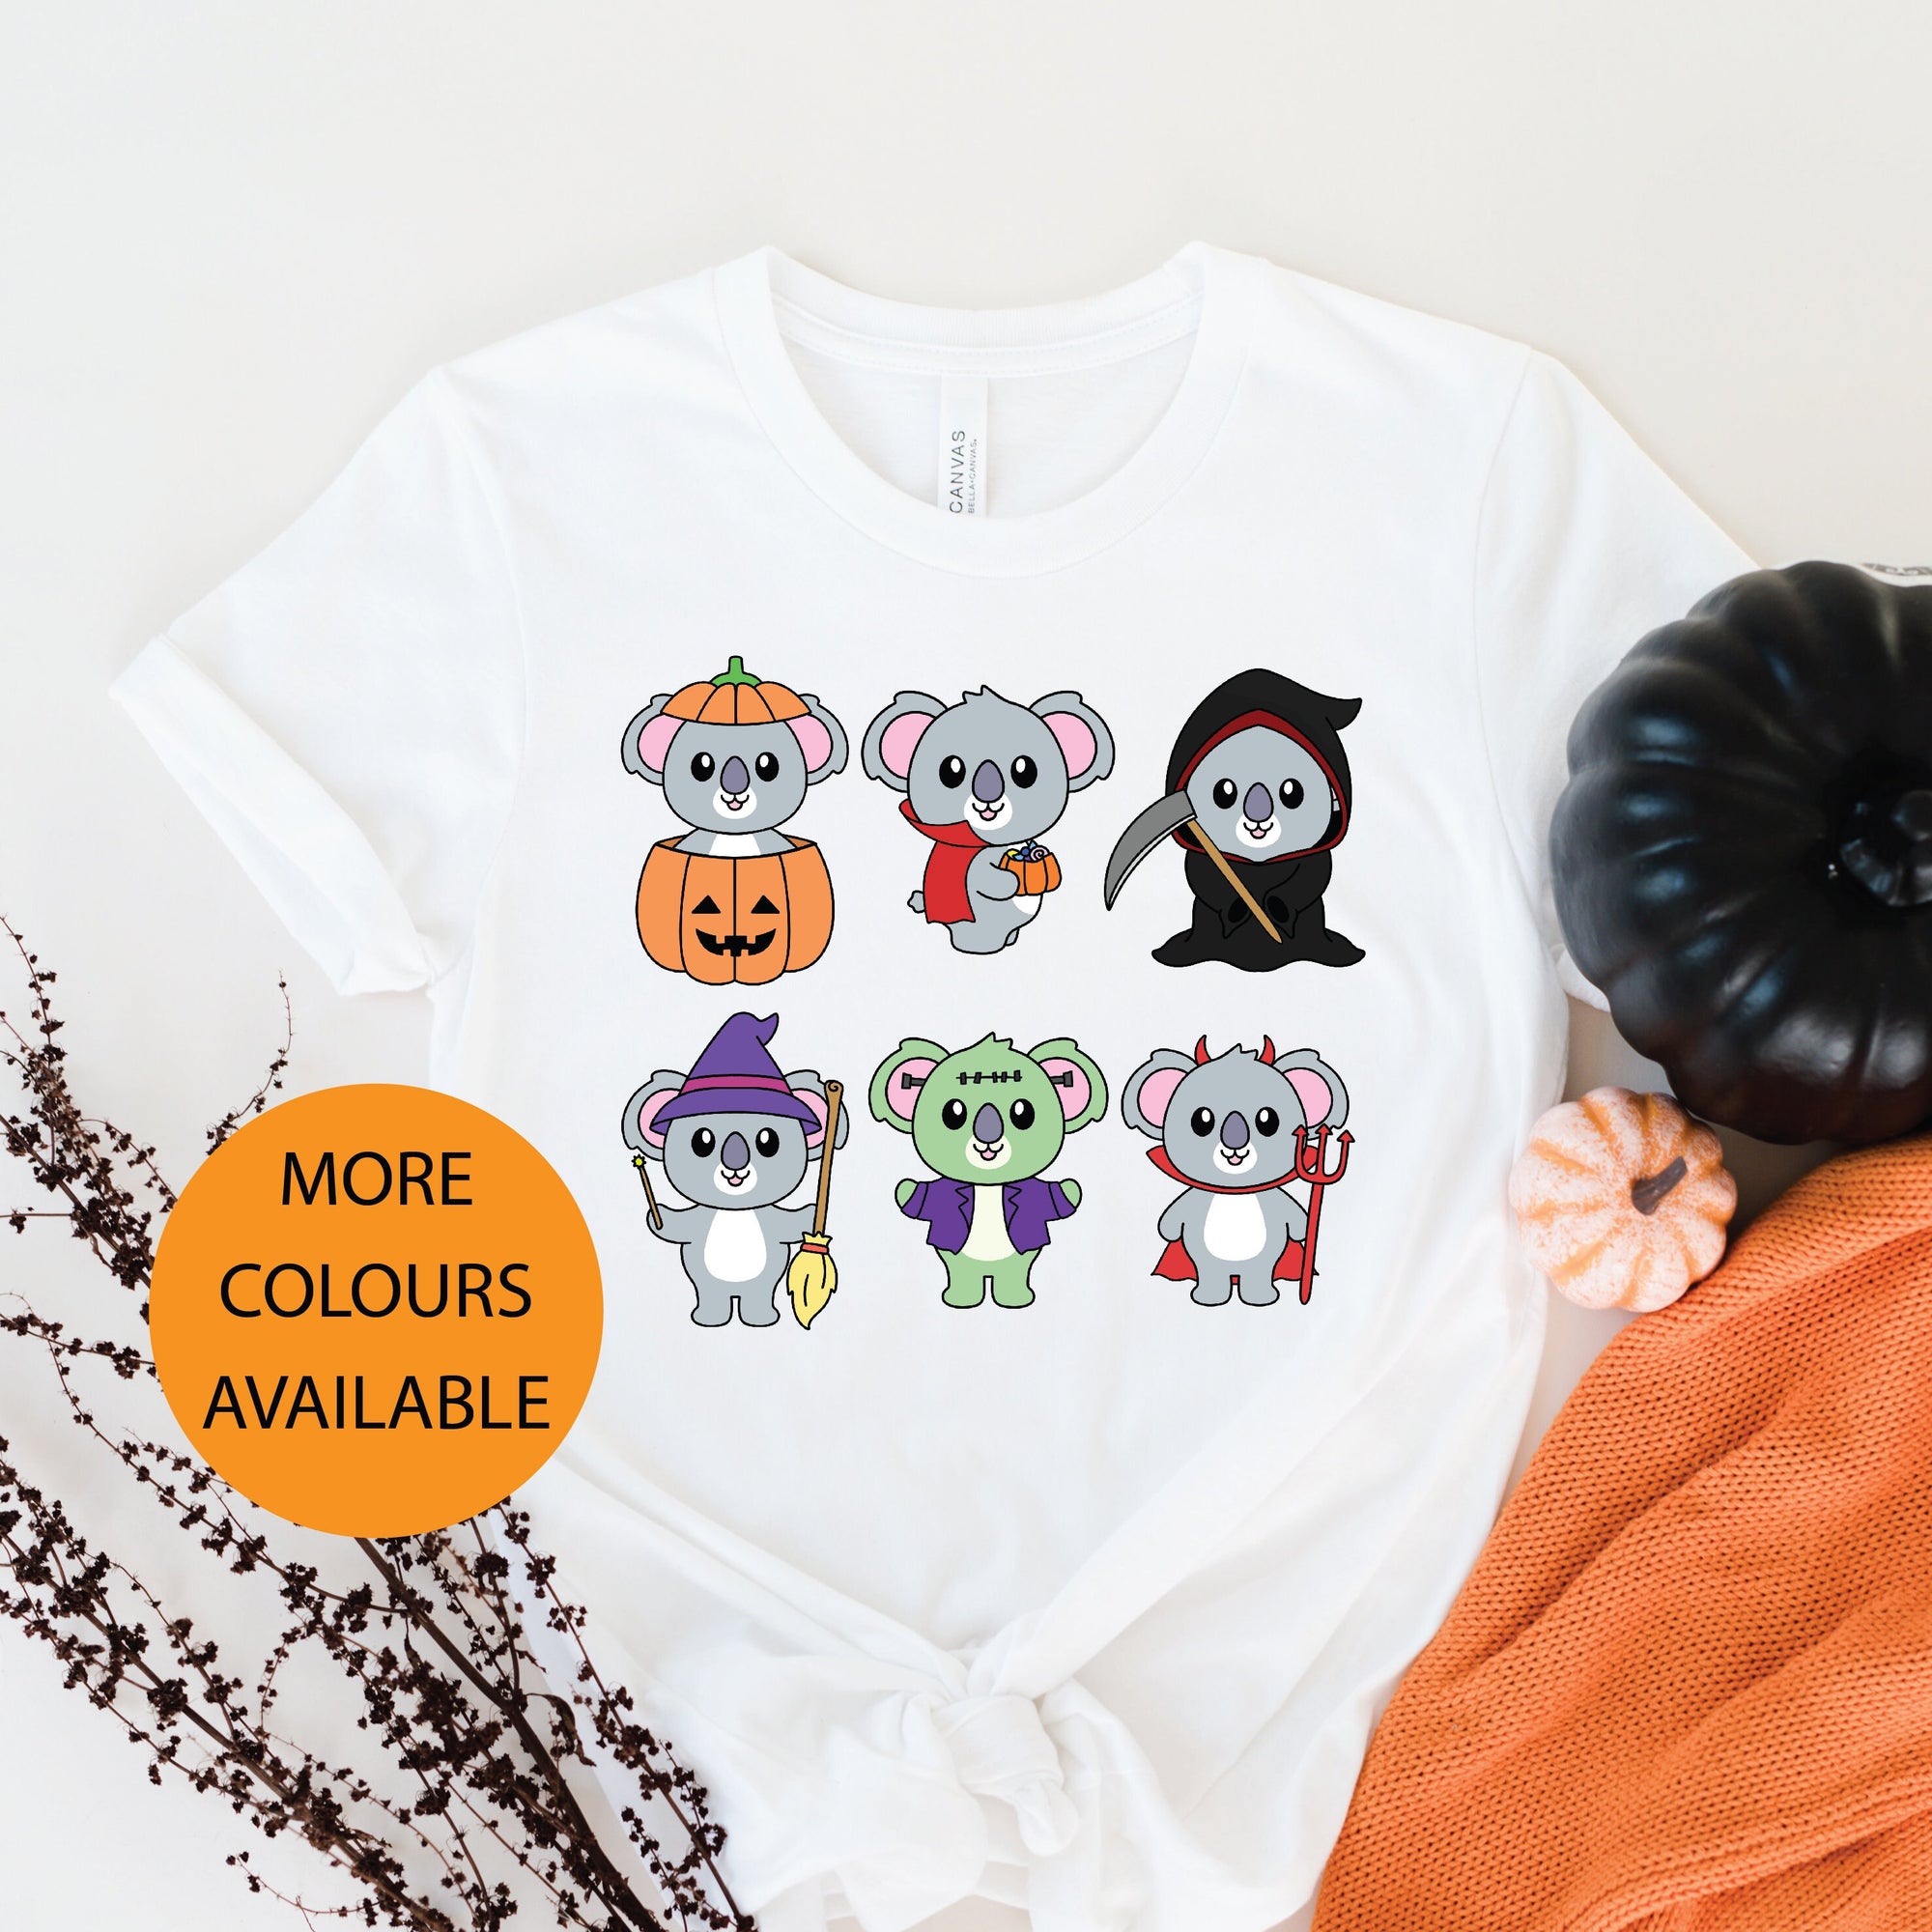 Koala Halloween T-Shirt, Halloween T-Shirt, Halloween T-Shirt With Koalas, Women's Fancy Dress Shirt, Halloween Outfit, Aussie Halloween